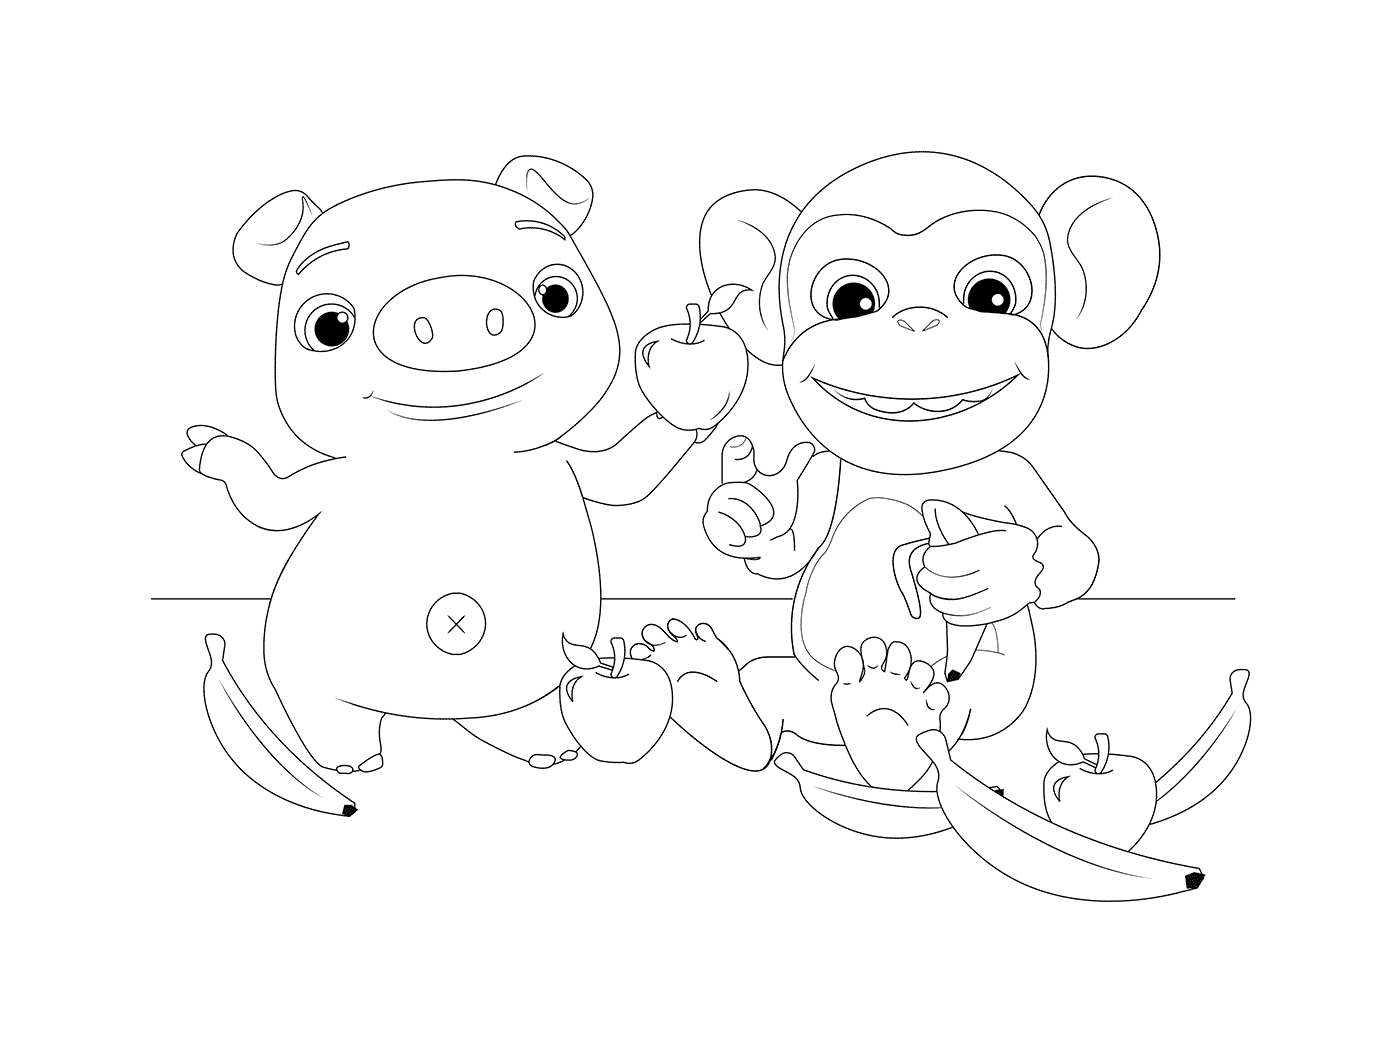  Mochi和Pepe:猴子和滑稽猪 